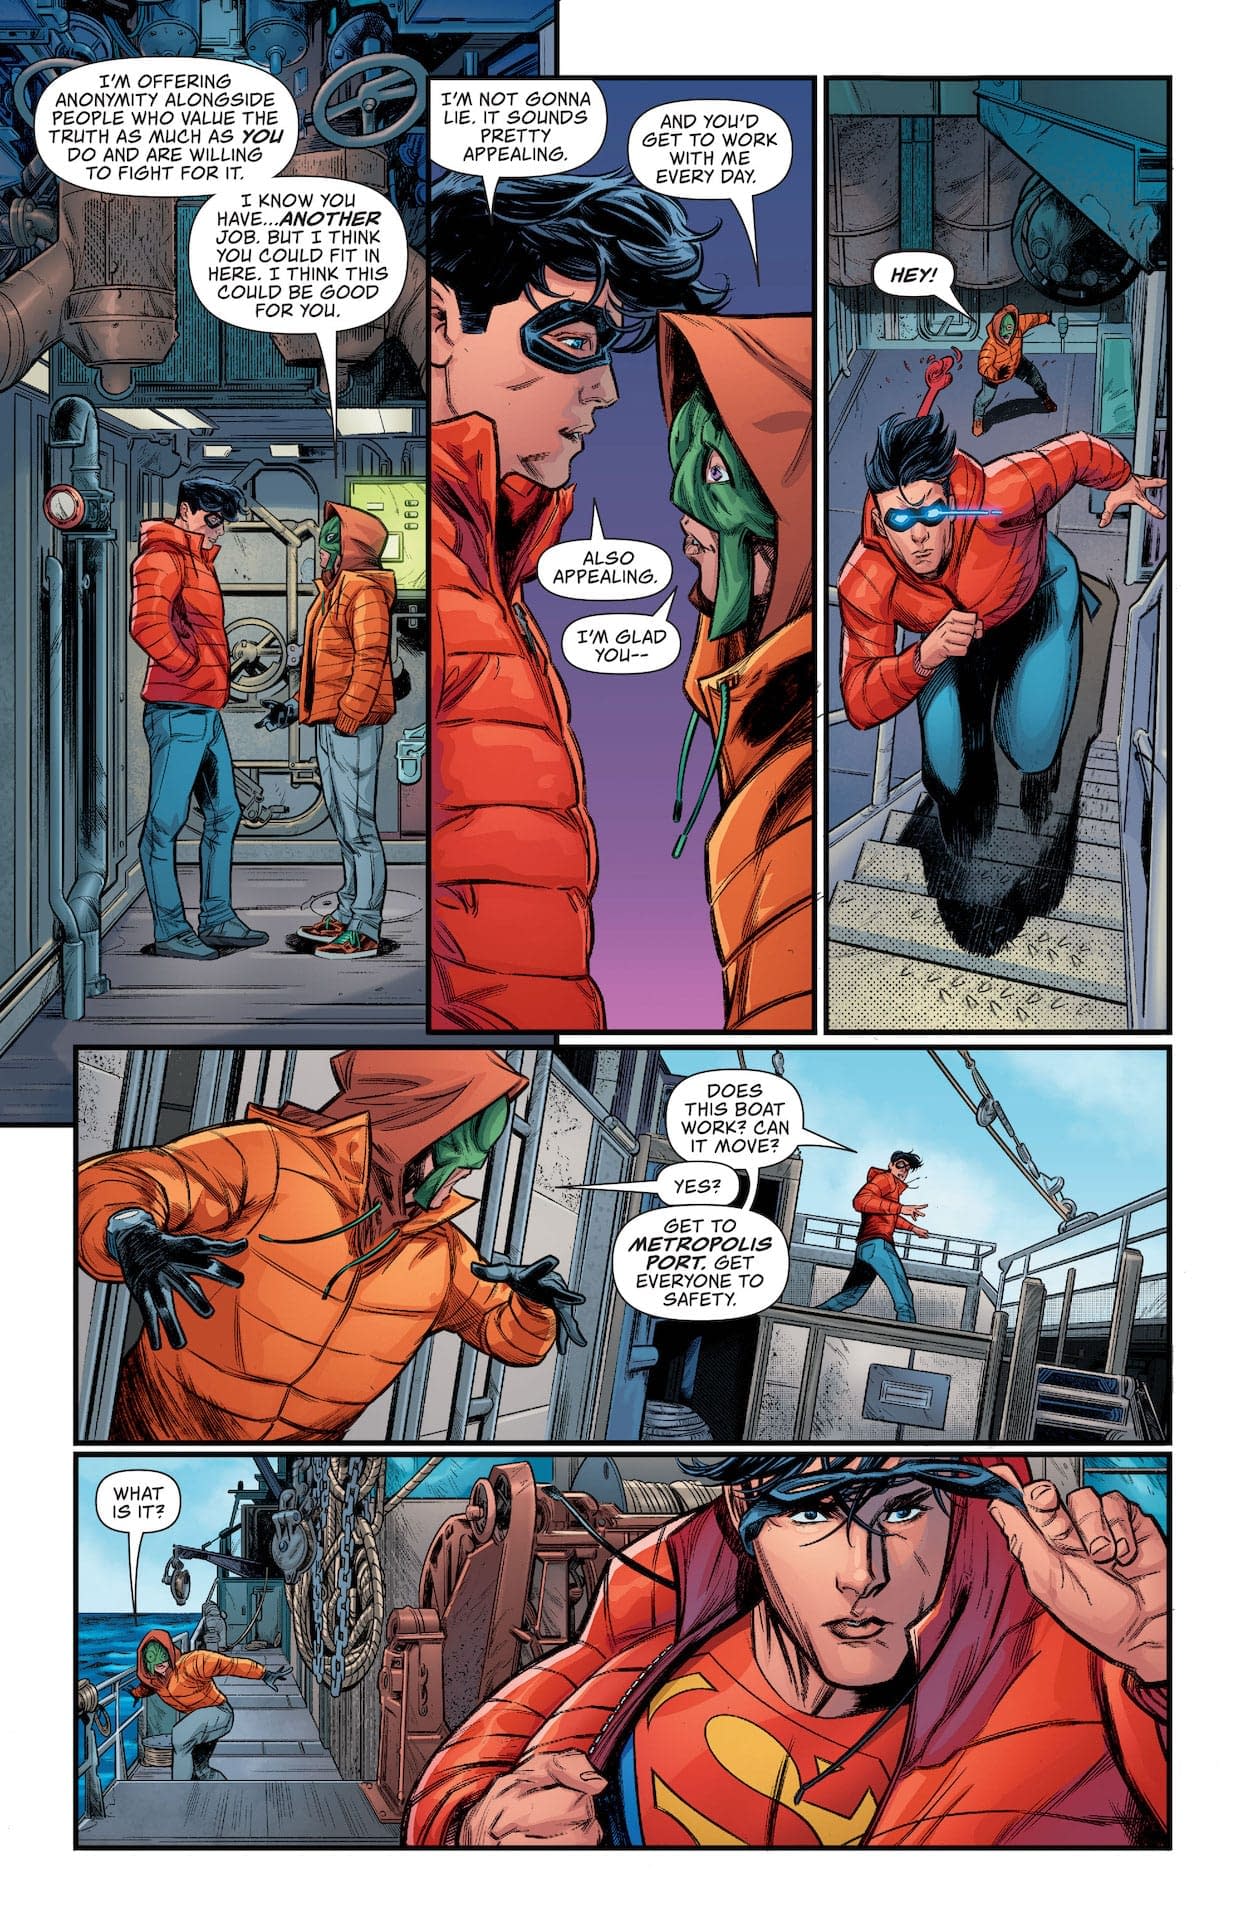 SUPERMAN SON OF KAL-EL #7 1121DC093 DC COMICS 